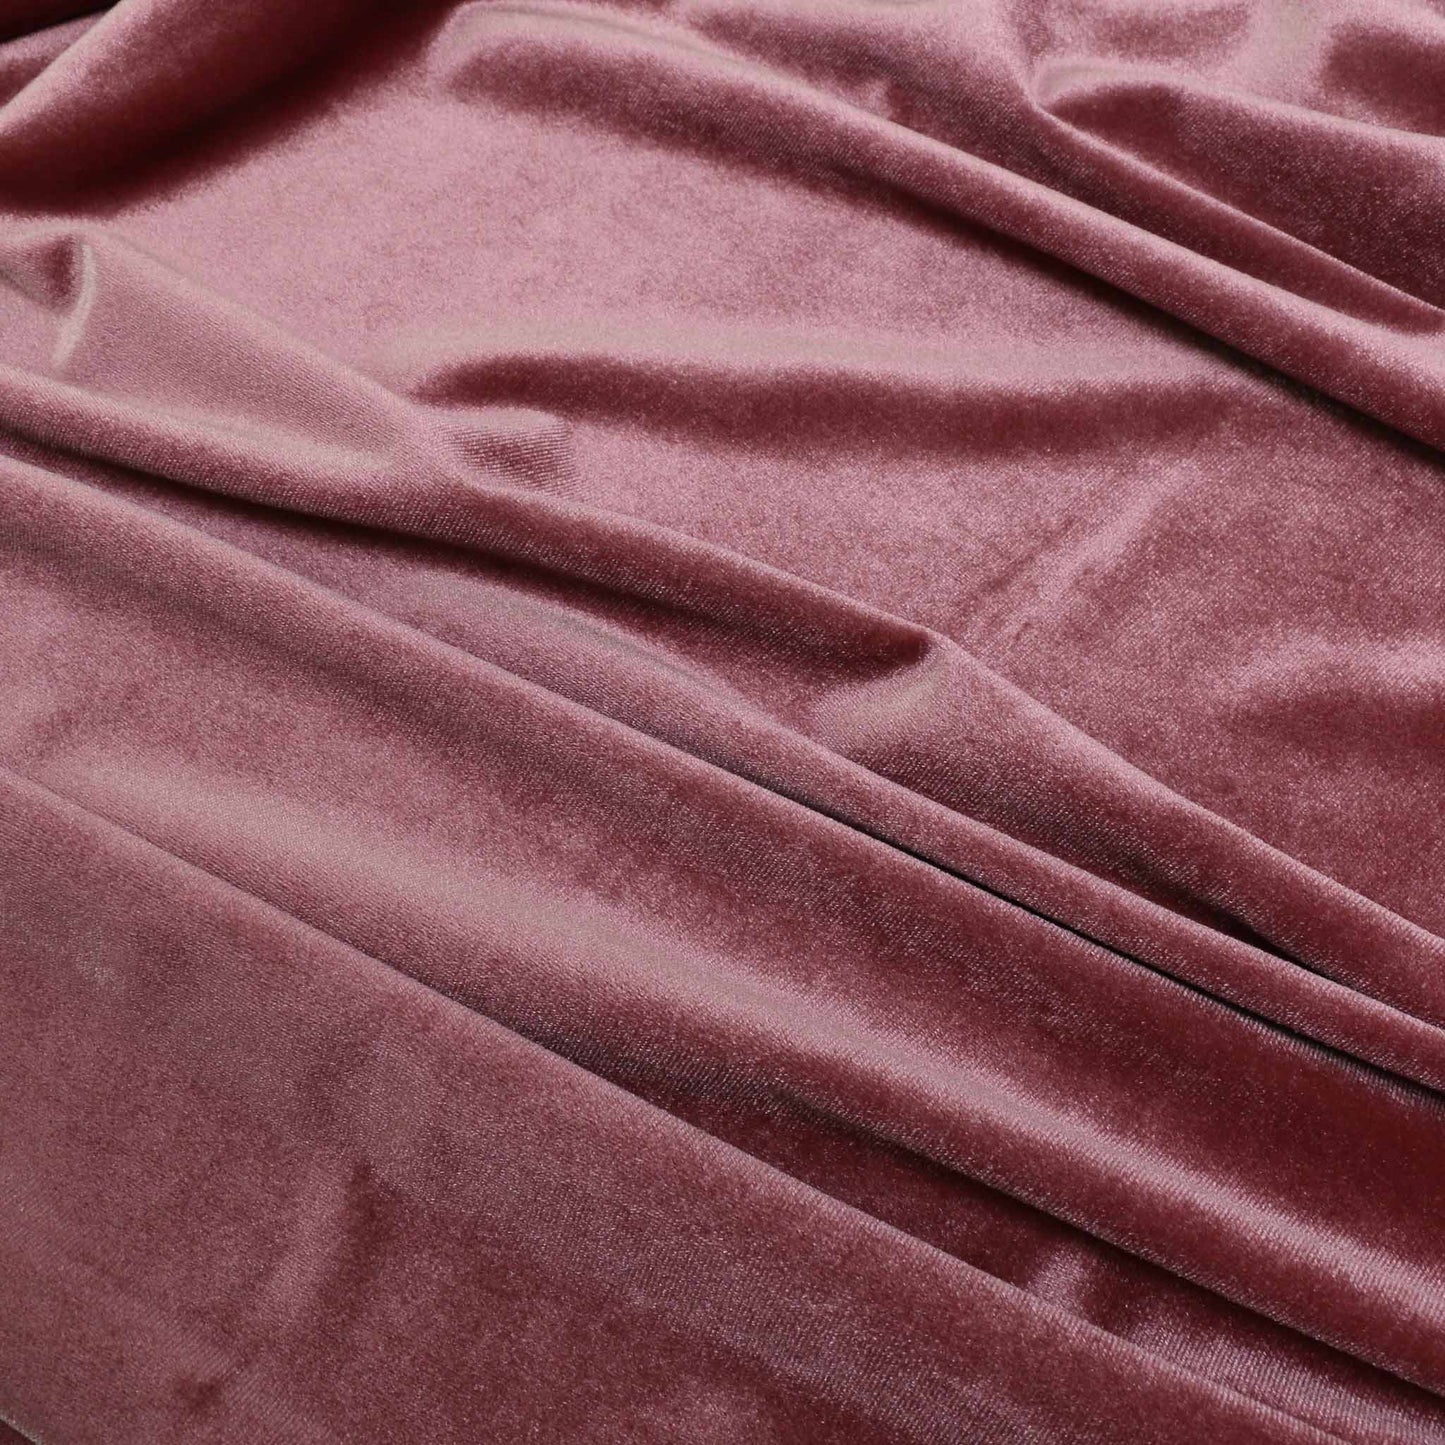 Velour - Dusky pink, Terracotta